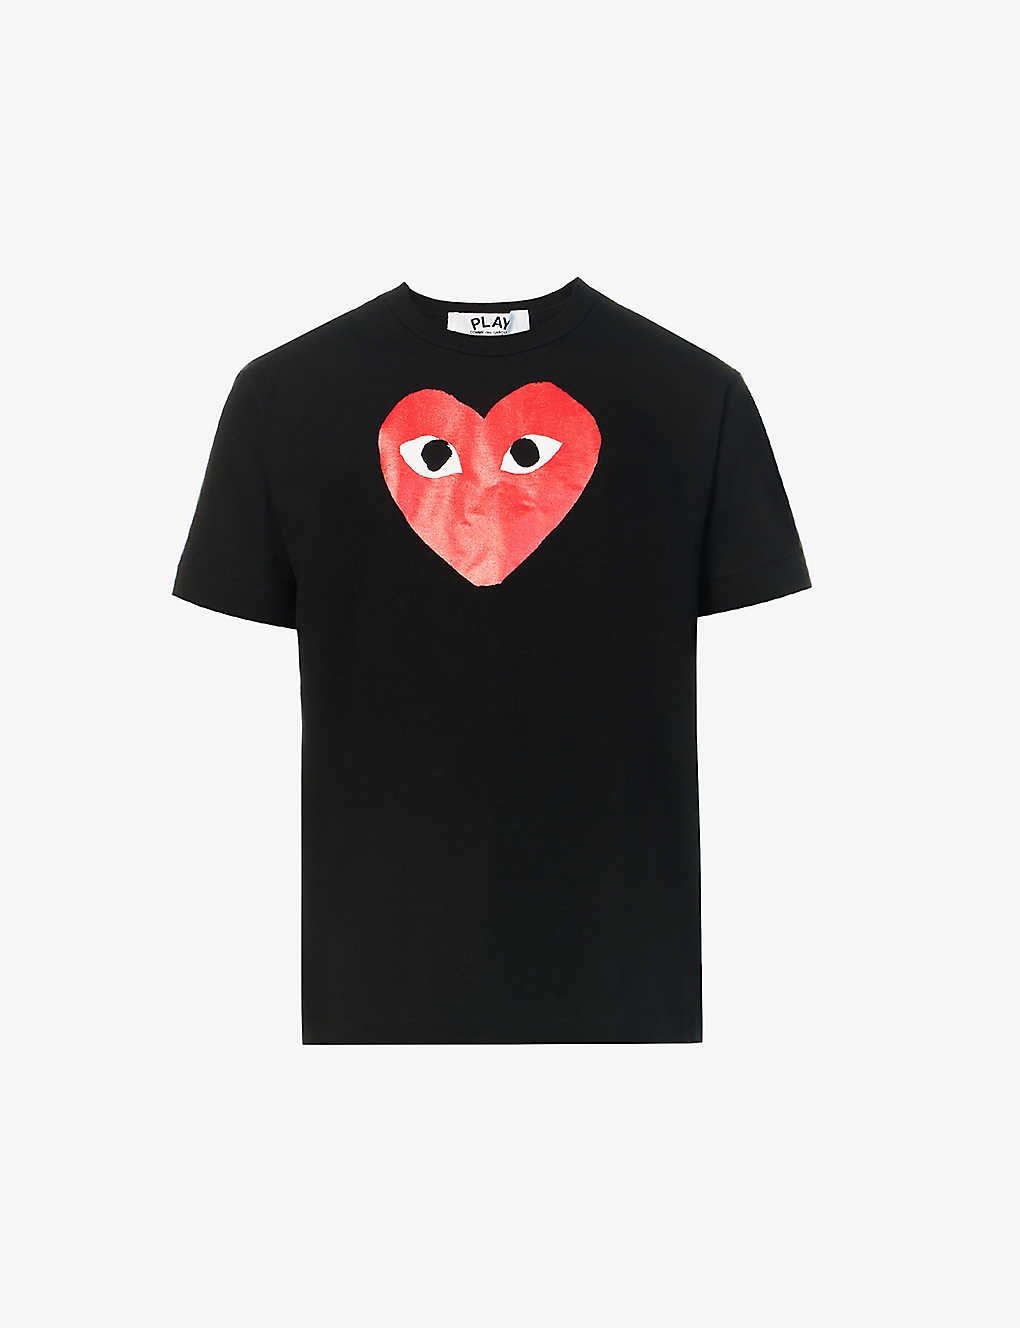 Shop Comme Des Garçons Play Comme Des Garcons Play Mens Black Play Heart Cotton T-shirt